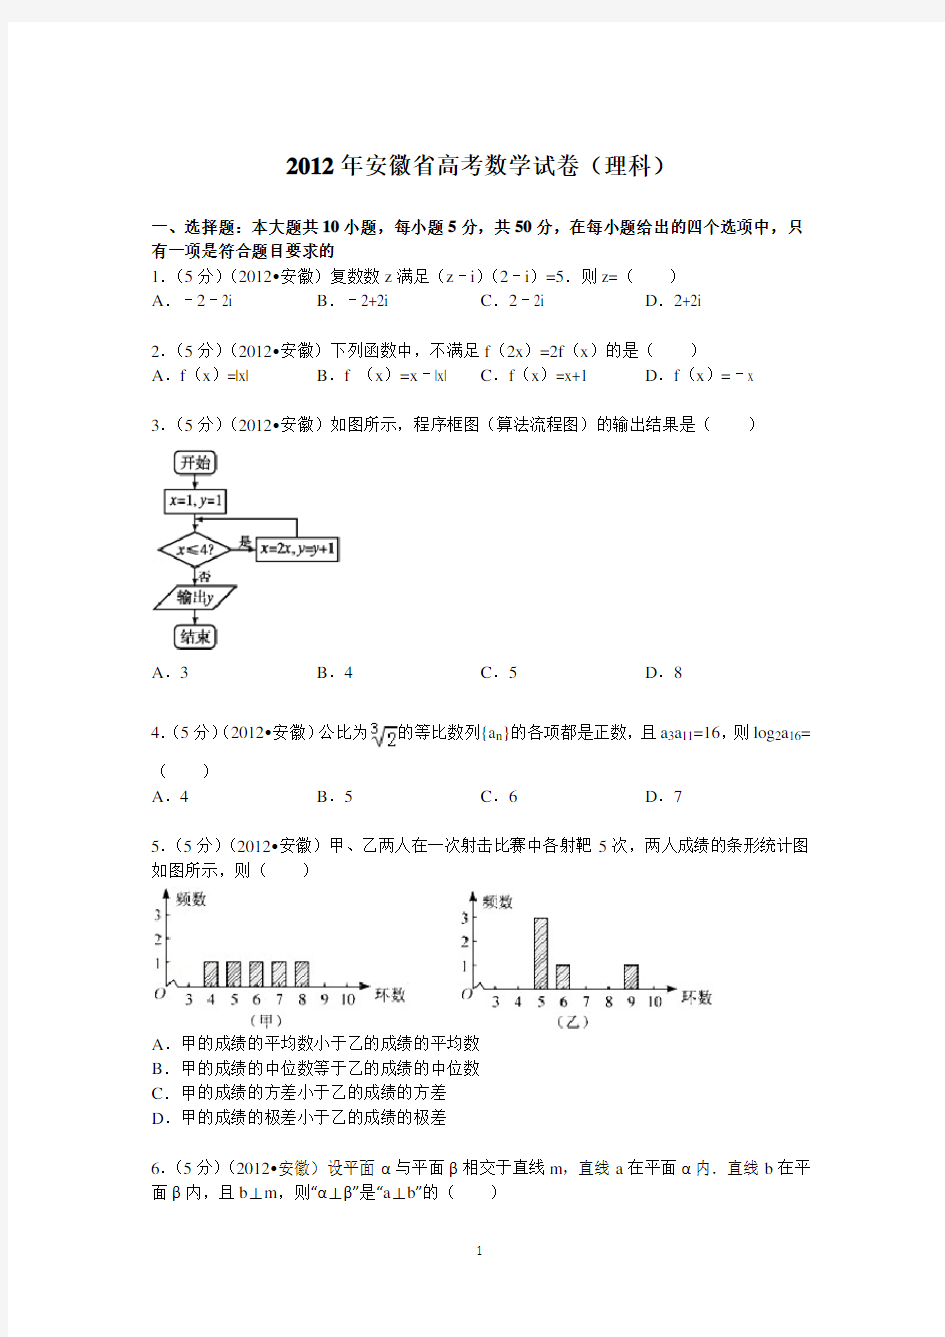 (完整版)2012年安徽省高考数学试卷(理科)答案与解析